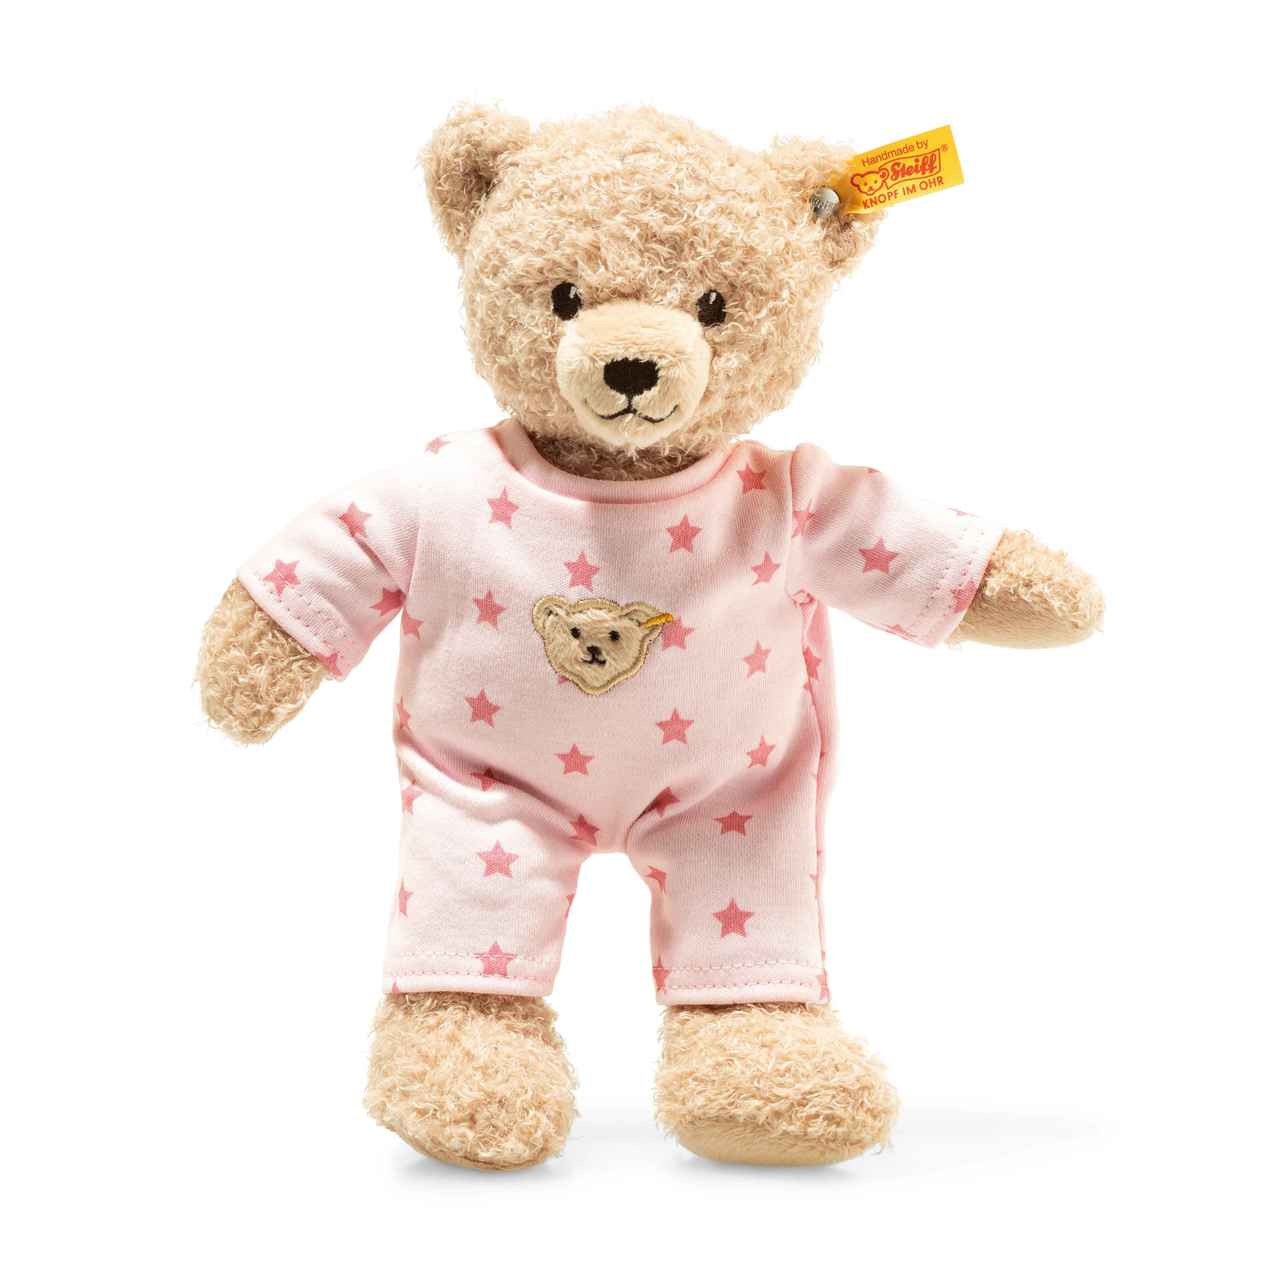 Steiff Unisex Baby Mit Süßer teddybärapplikation Schneeanzug